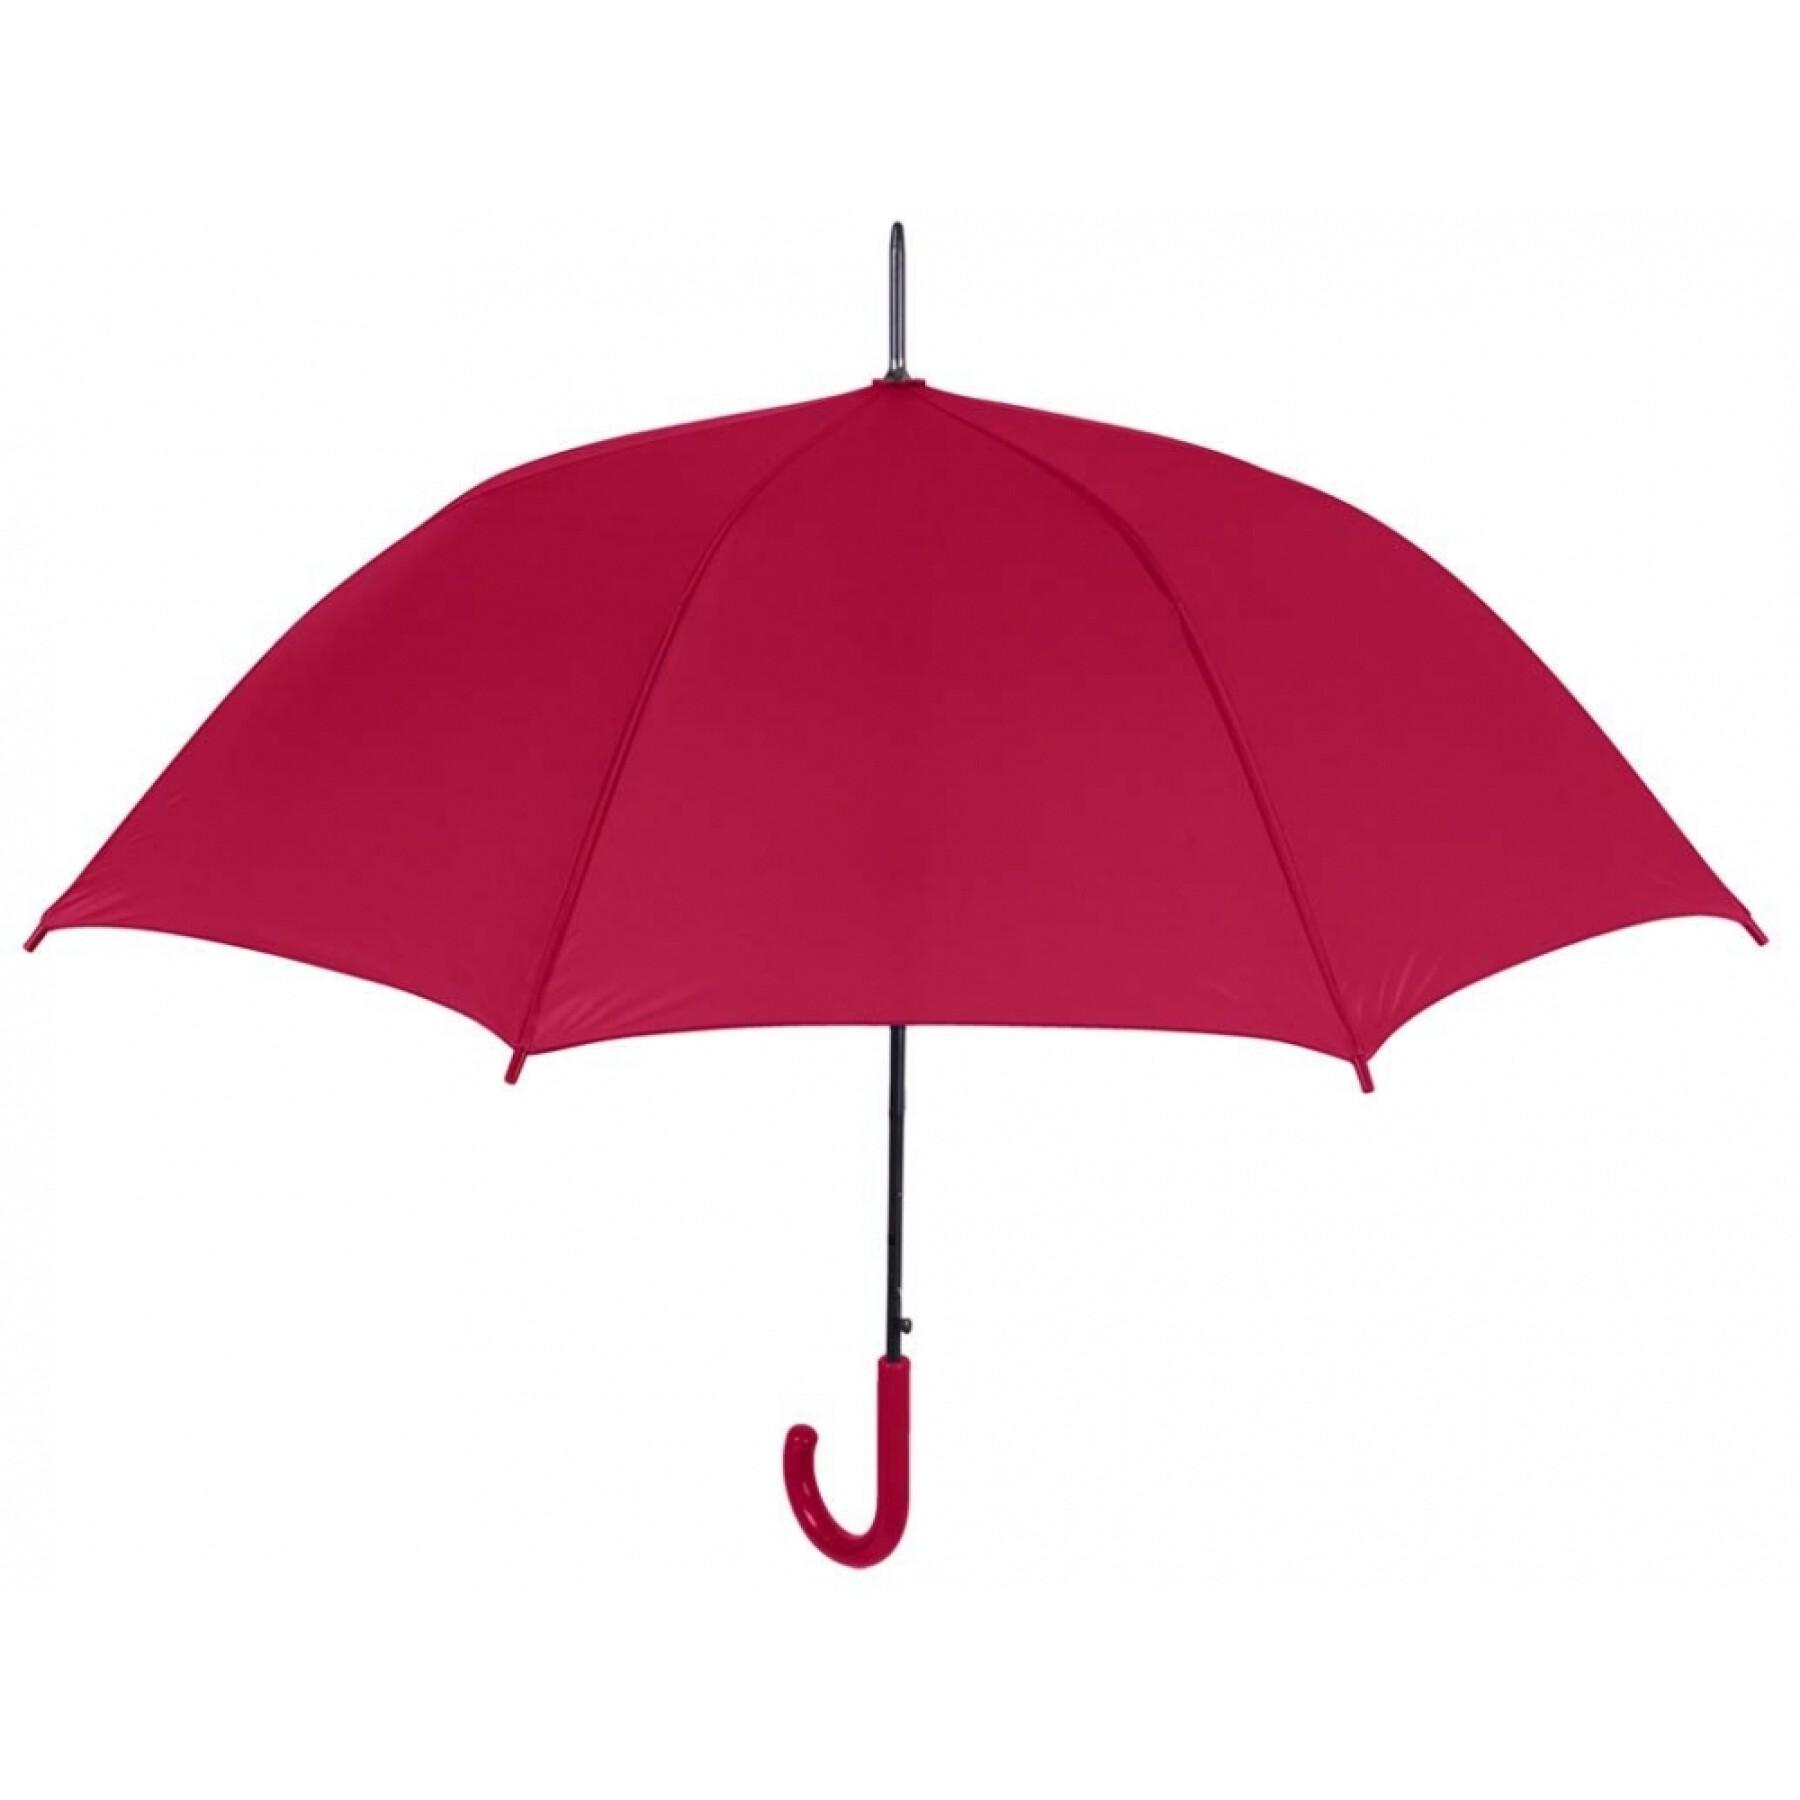 O guarda-chuva simples das crianças Perletti